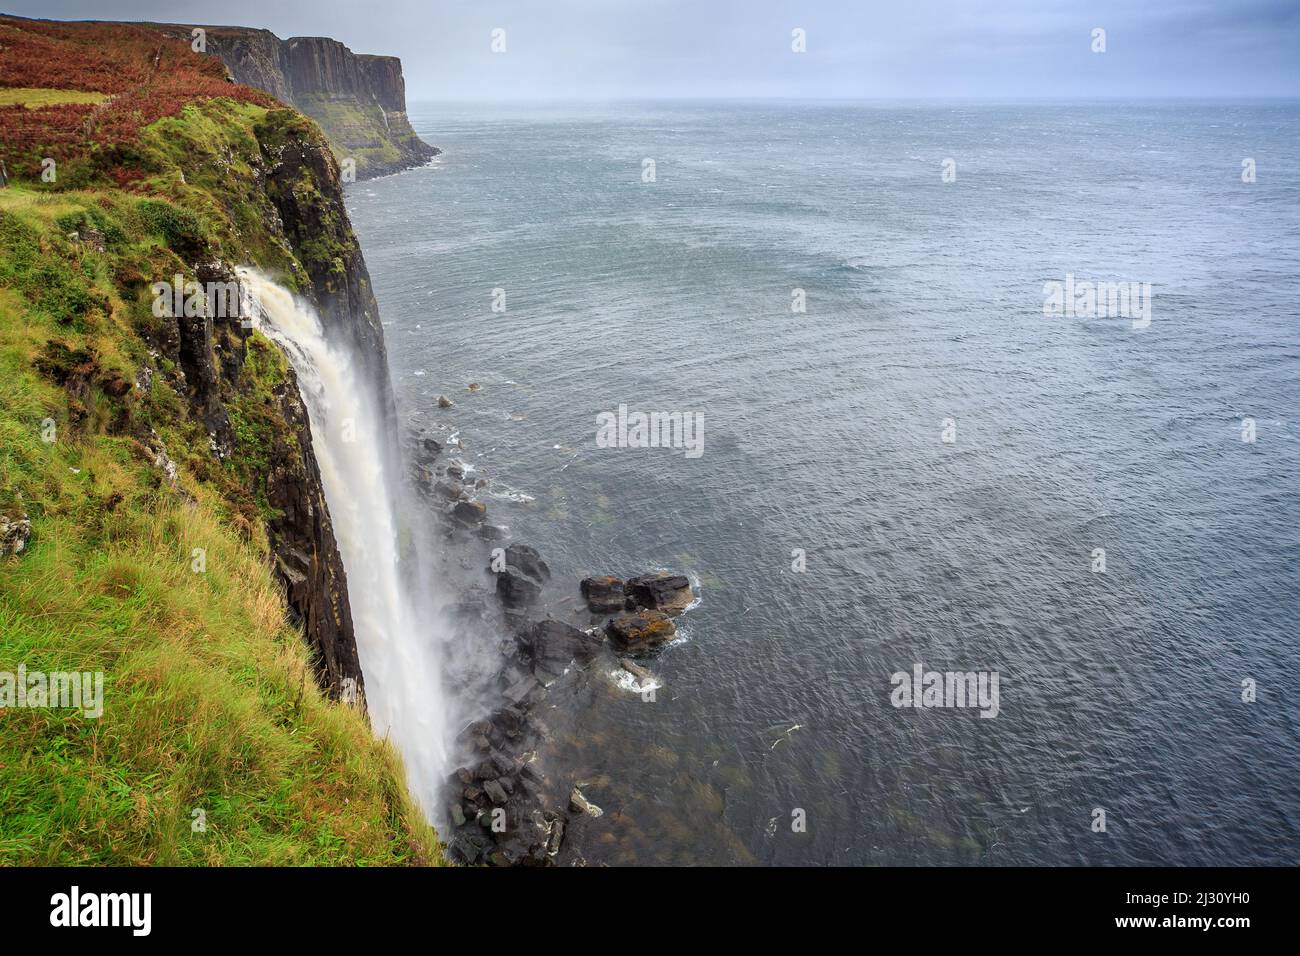 Kilt Rock, Mealt Falls, chute d'eau dans la mer, île de Skye, Écosse Royaume-Uni Banque D'Images